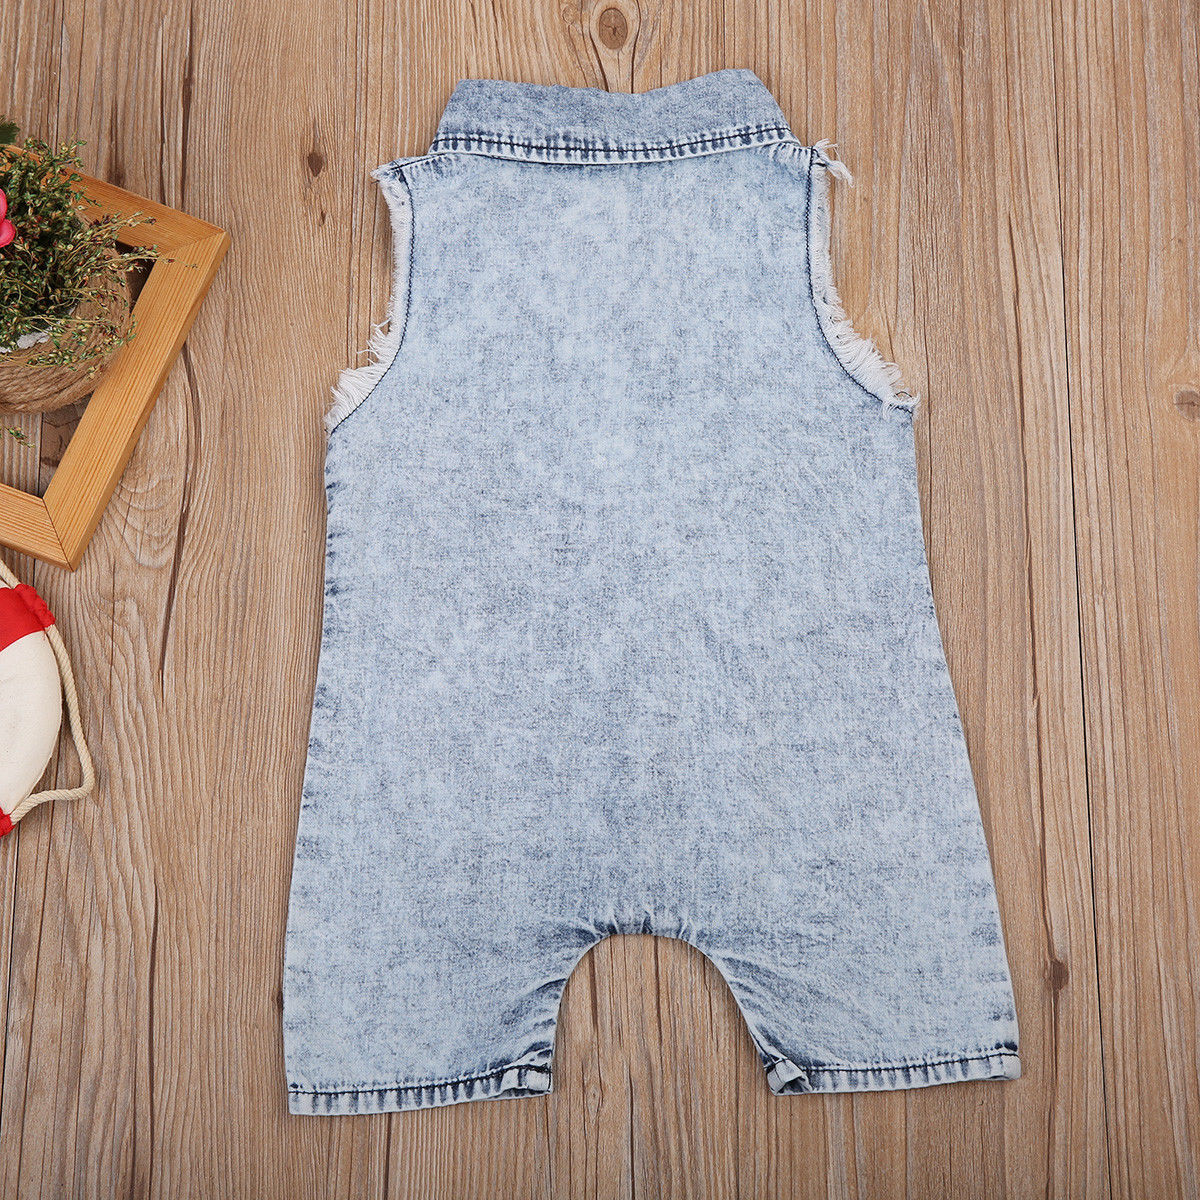 Denim Infant Jumpsuit Clothes